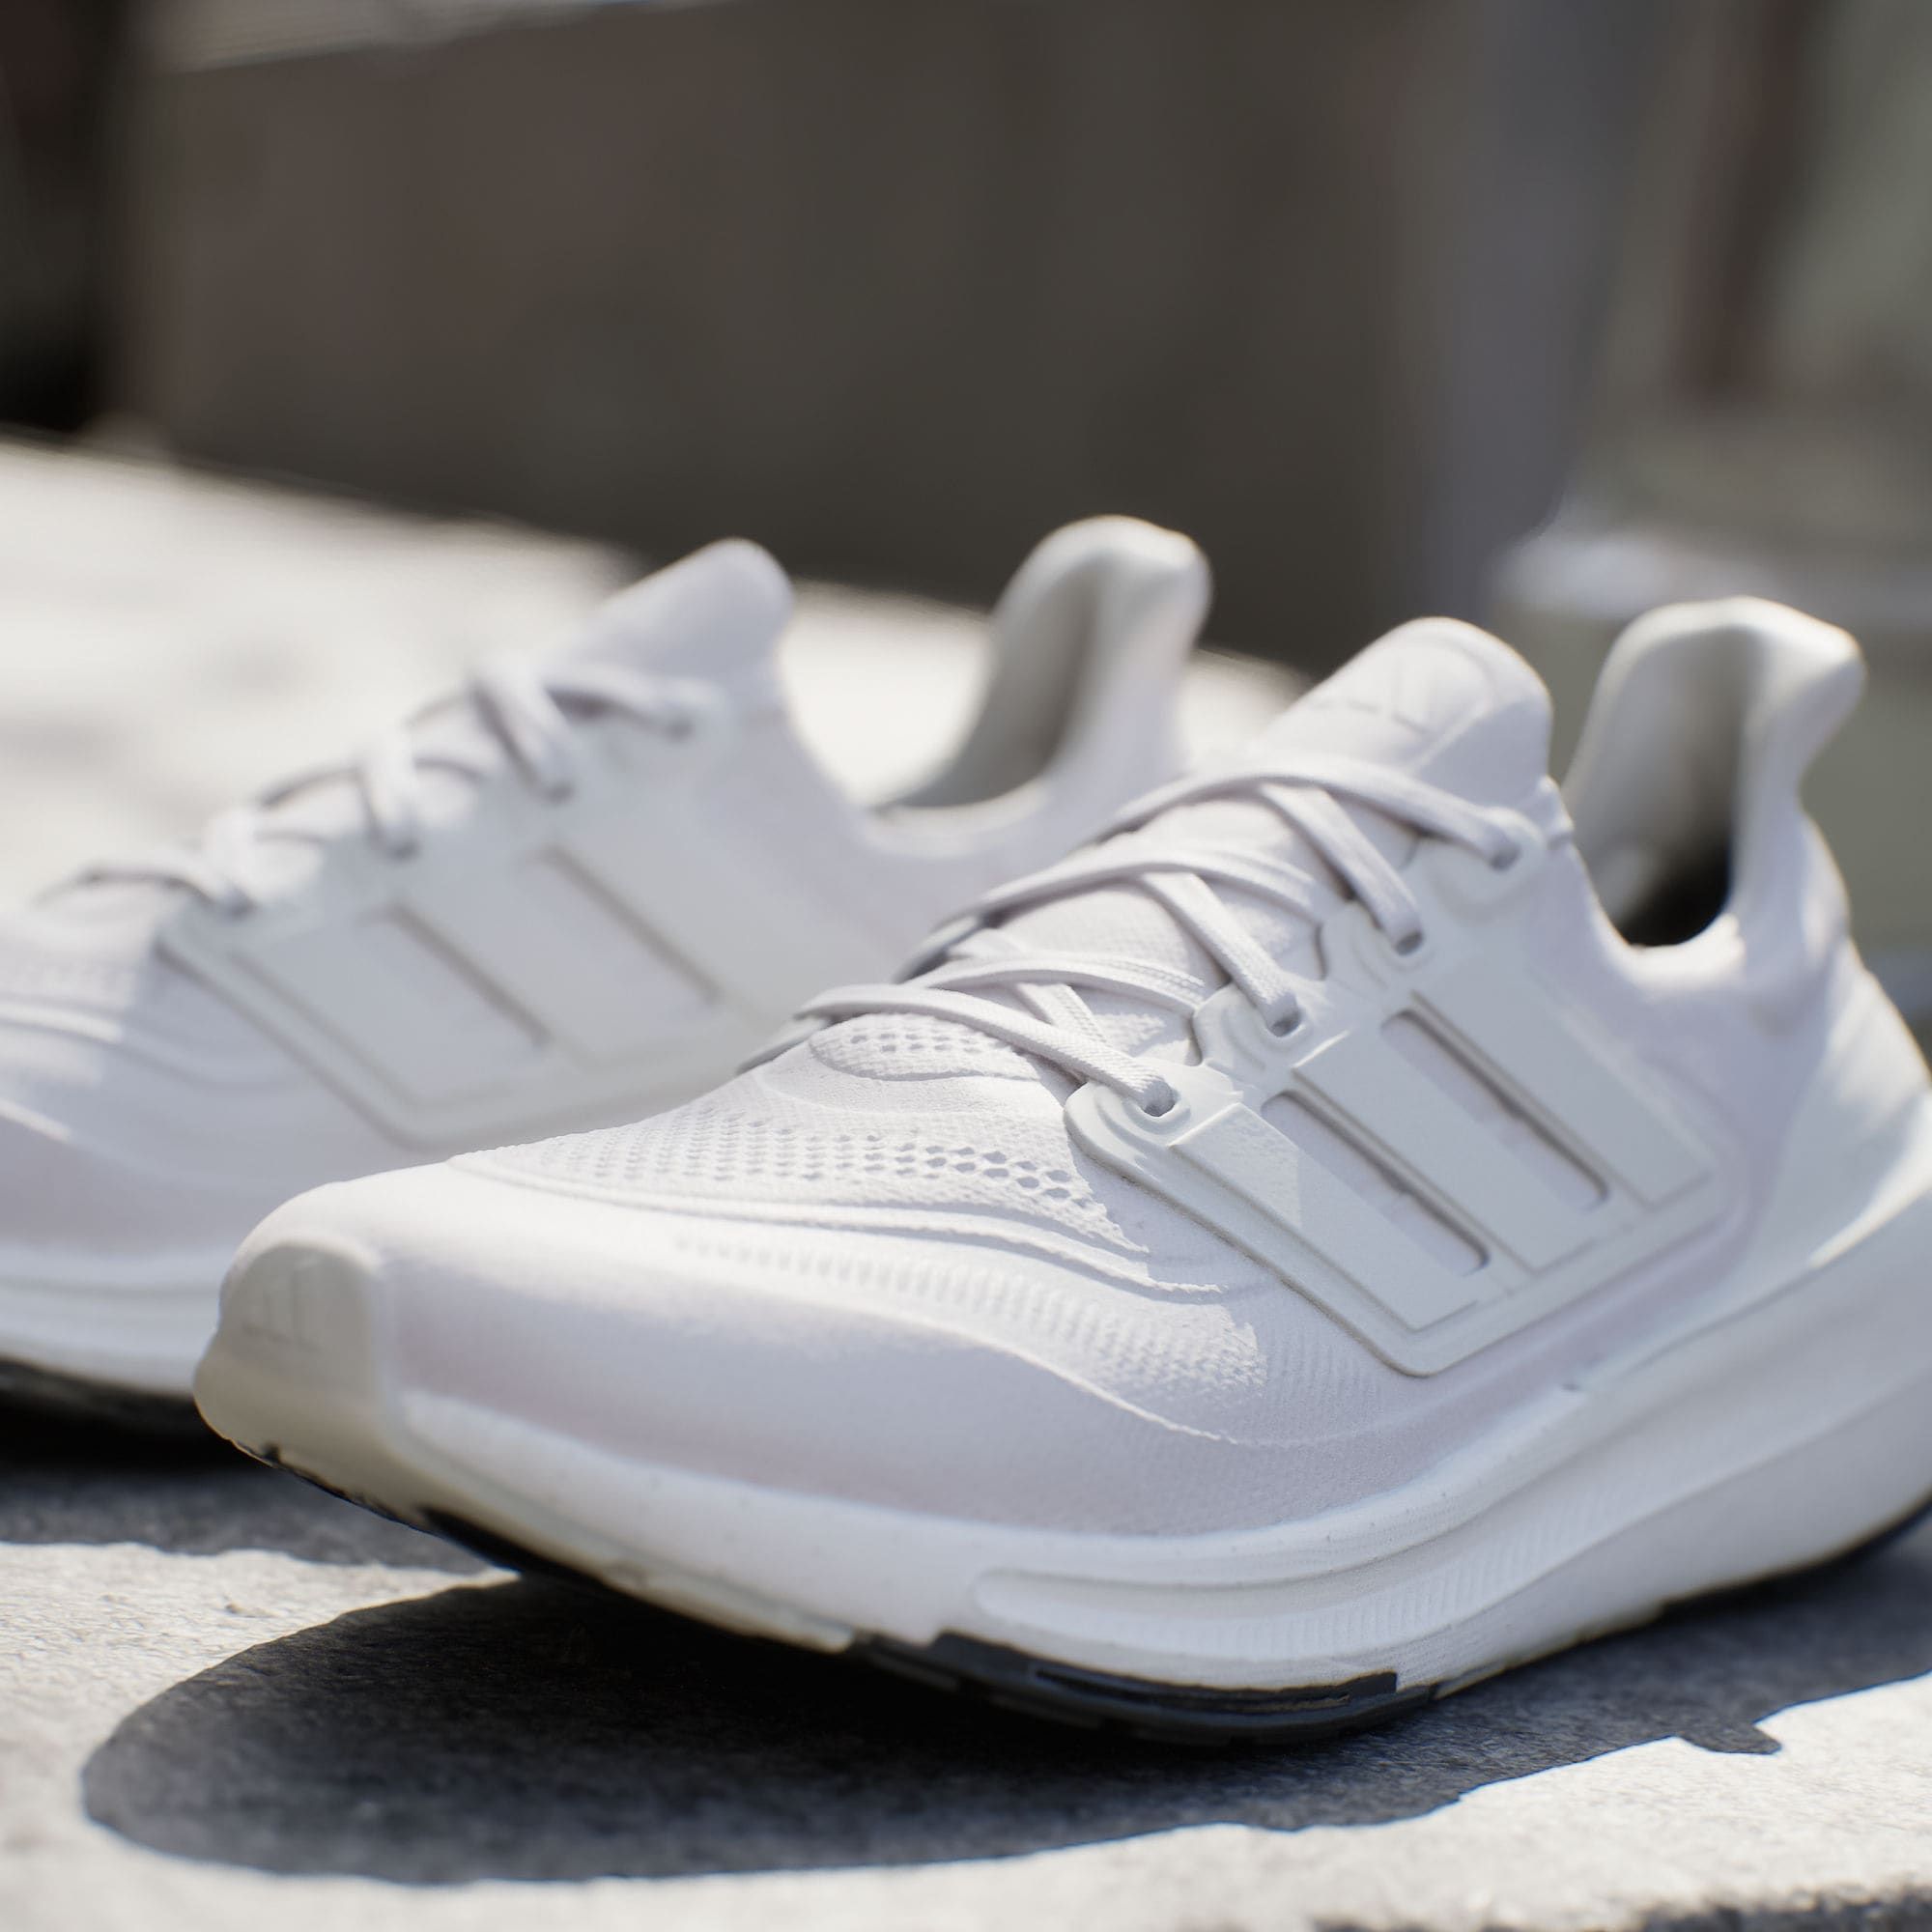  adidas UltraBOOST Light - White / White 